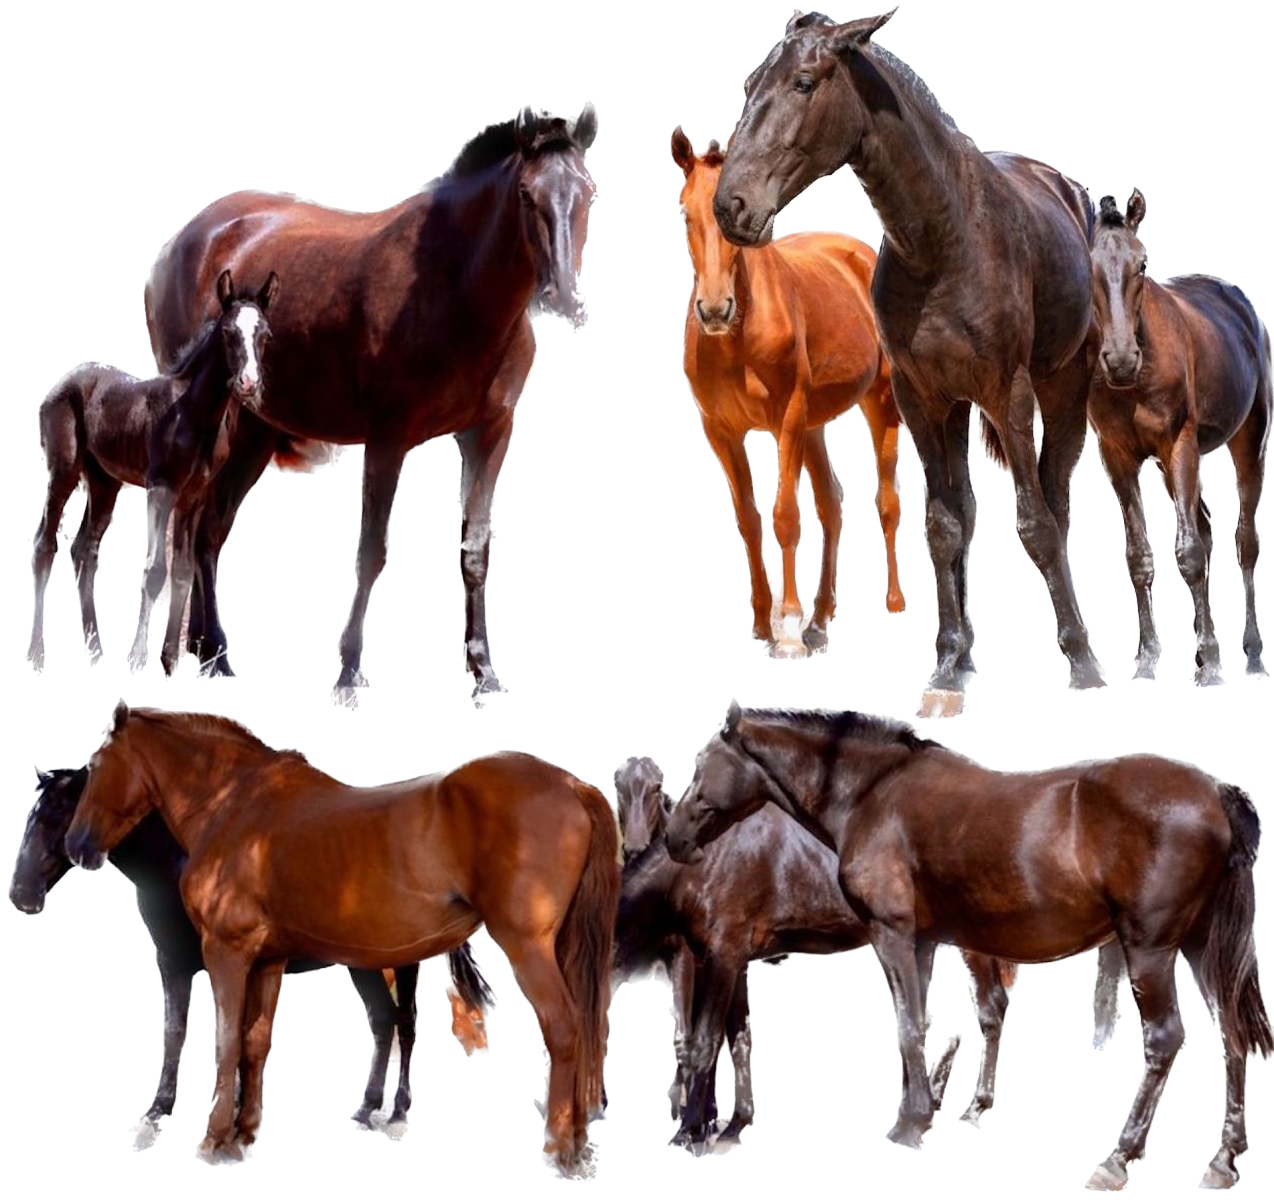 Menorcan horses